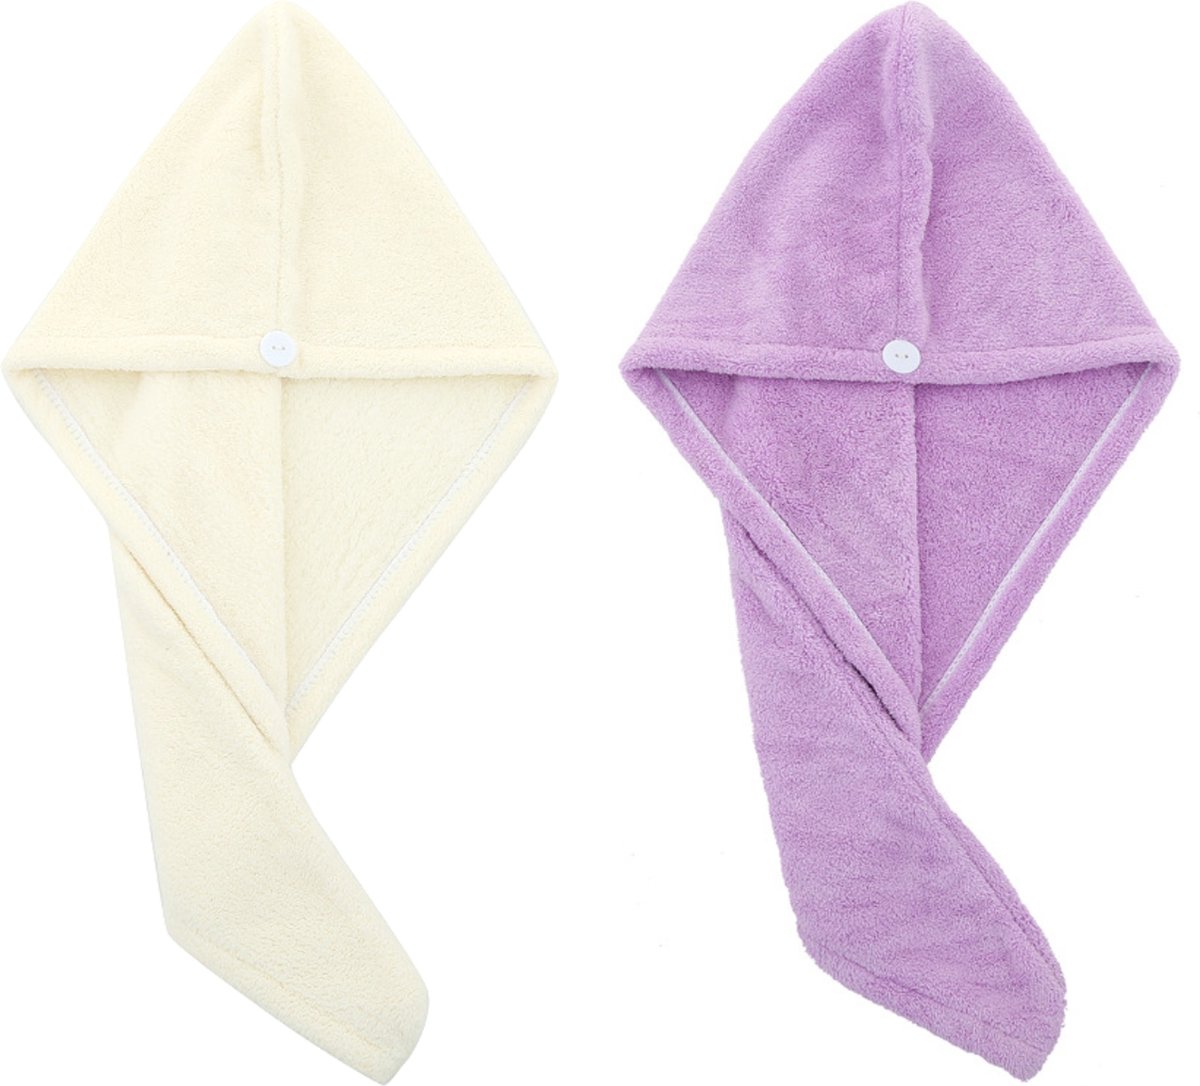 2x Haarhanddoek - Hoofdhanddoek - Hair towel - Sneldrogende handdoek - Haardroger - Haar handdoek - Wit/Paars